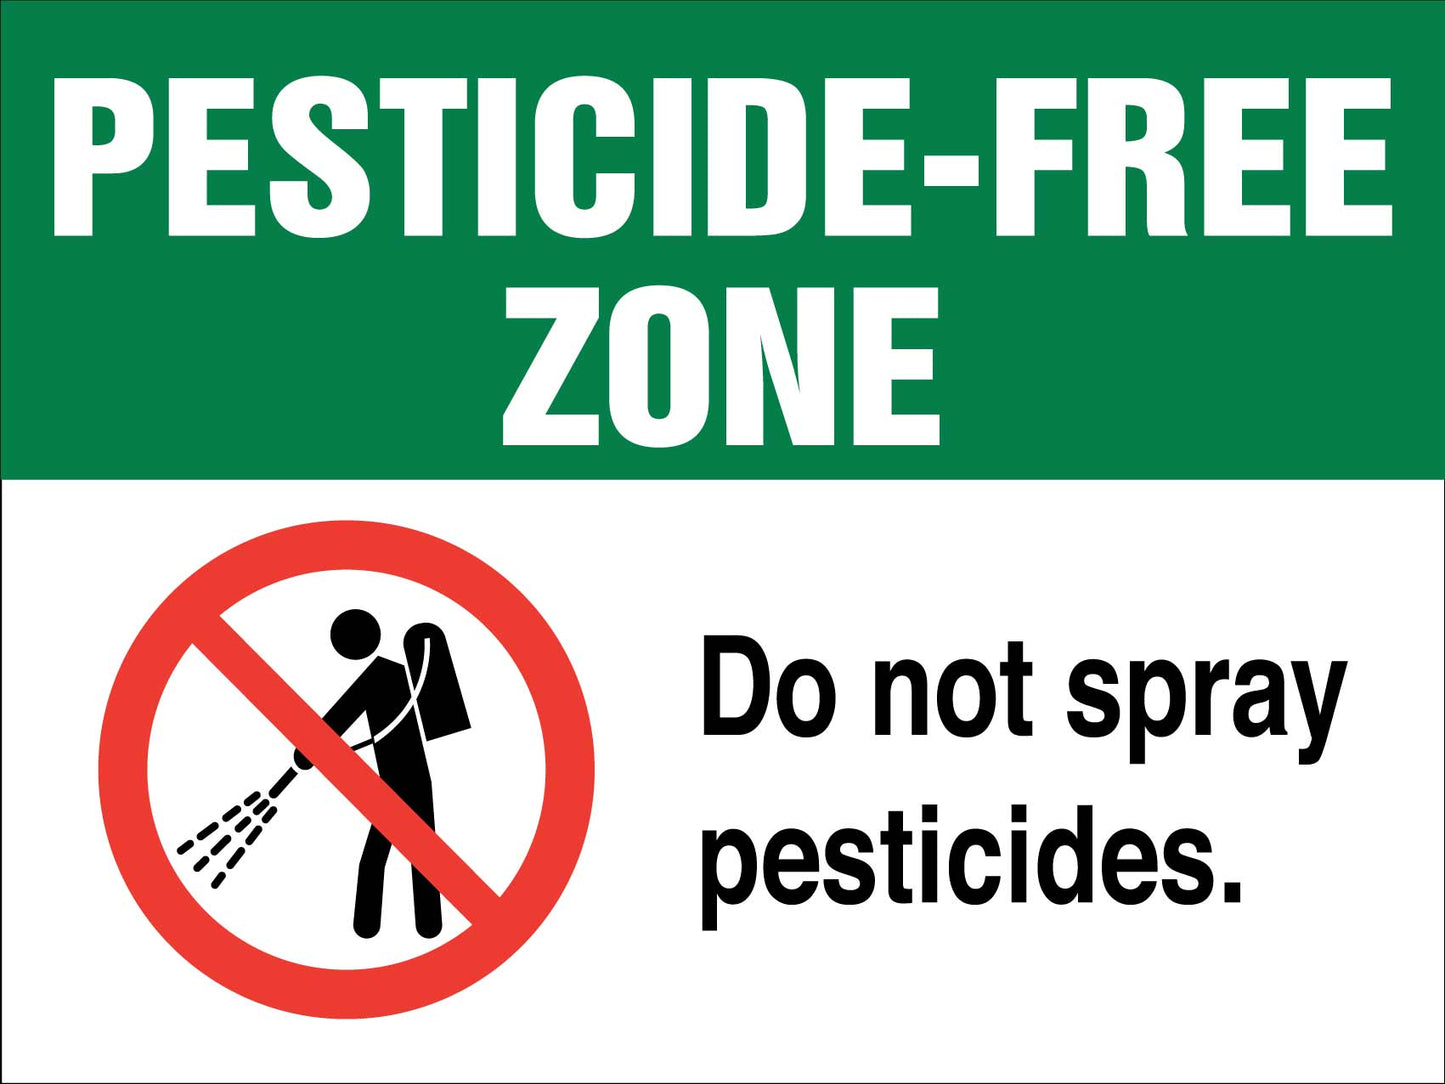 Pesticide Free Zone Do Not Spray Pesticides Sign